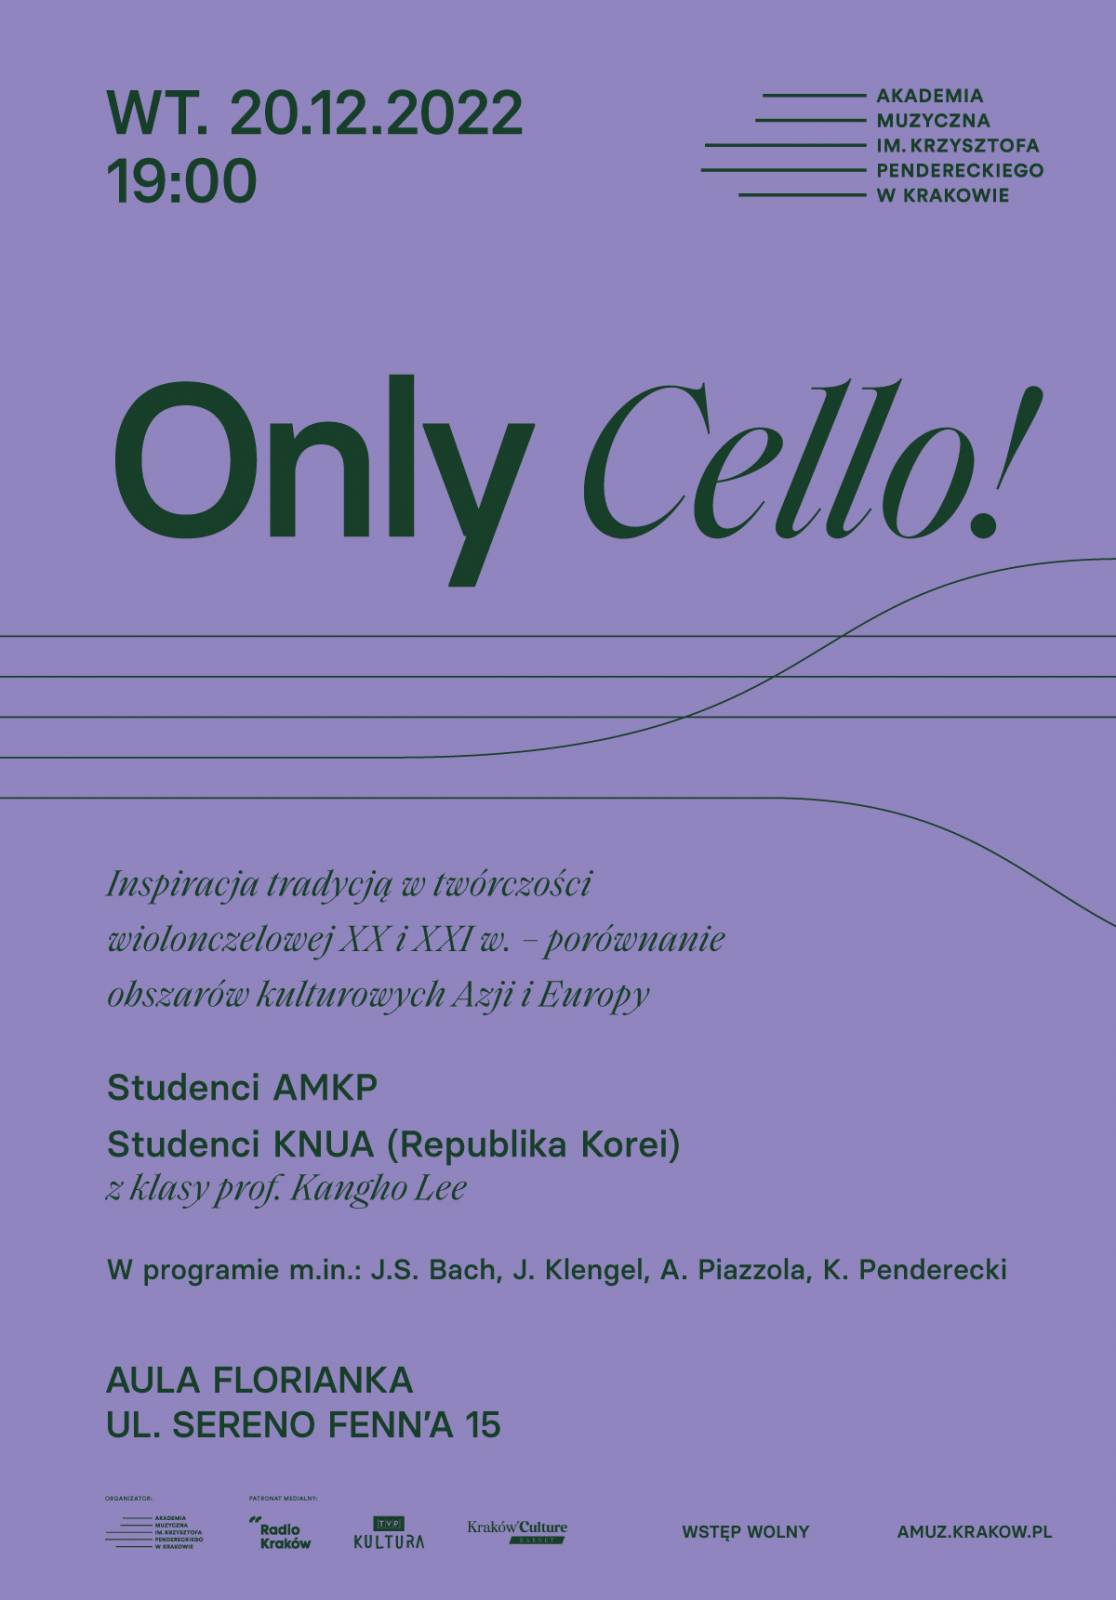 Only Cello!